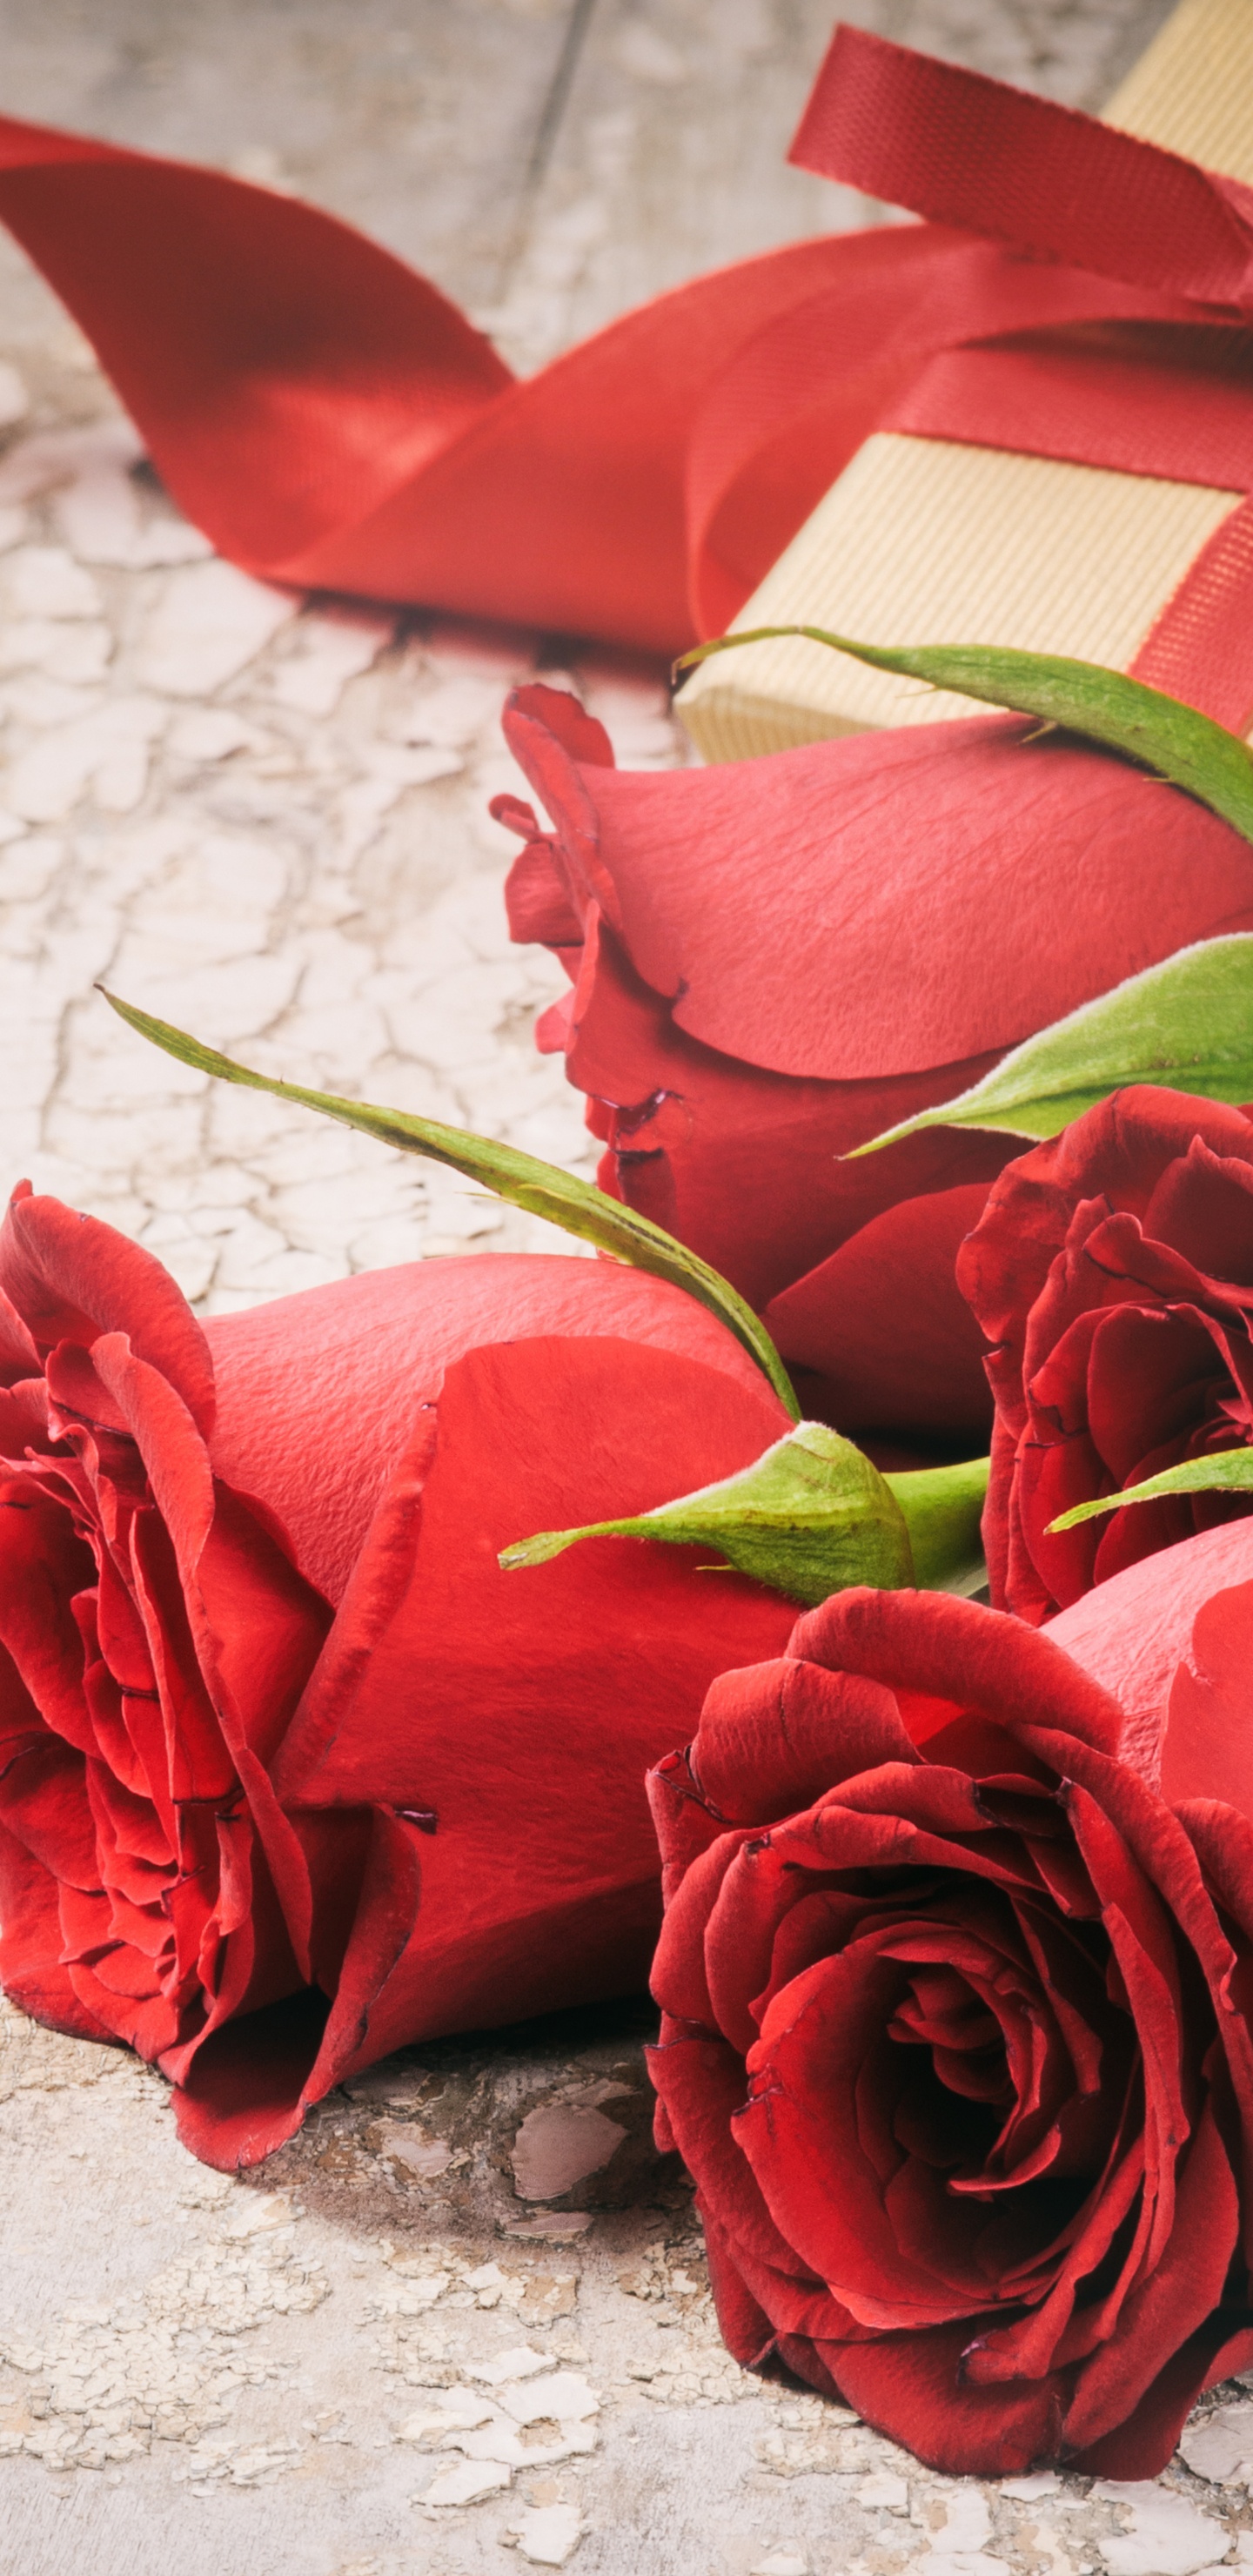 Rote Rosen Auf Weißem Textil. Wallpaper in 1440x2960 Resolution